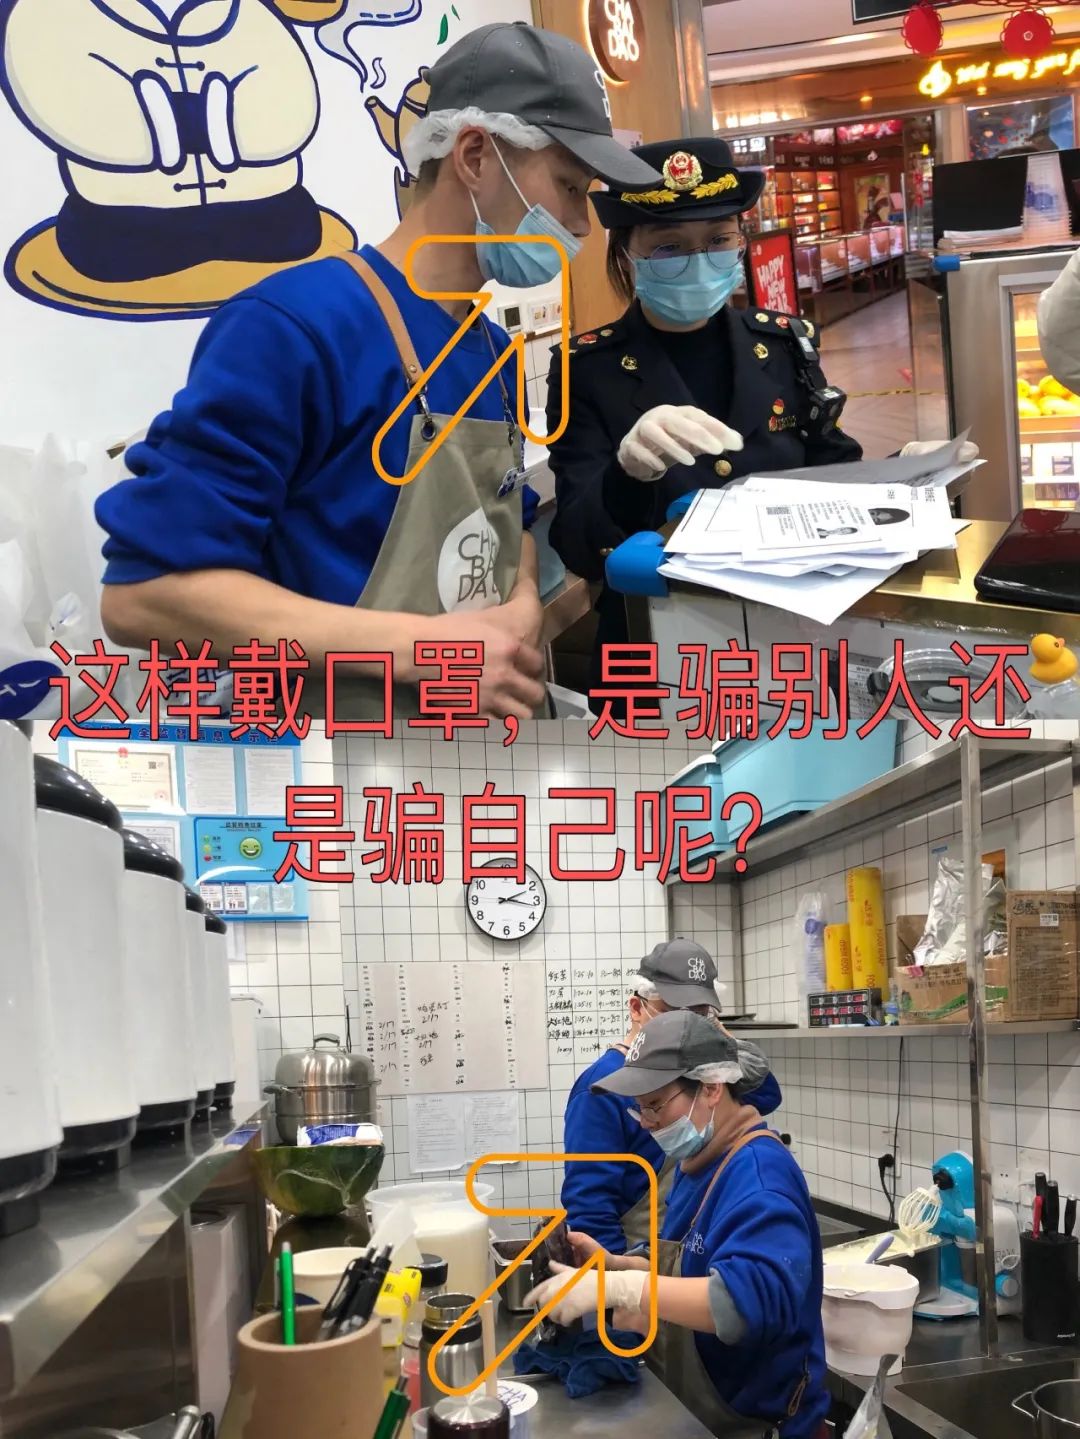 上海执法人员突袭奶茶店，COCO等知名店家后厨乱象丛生  诸多问题亟待改善